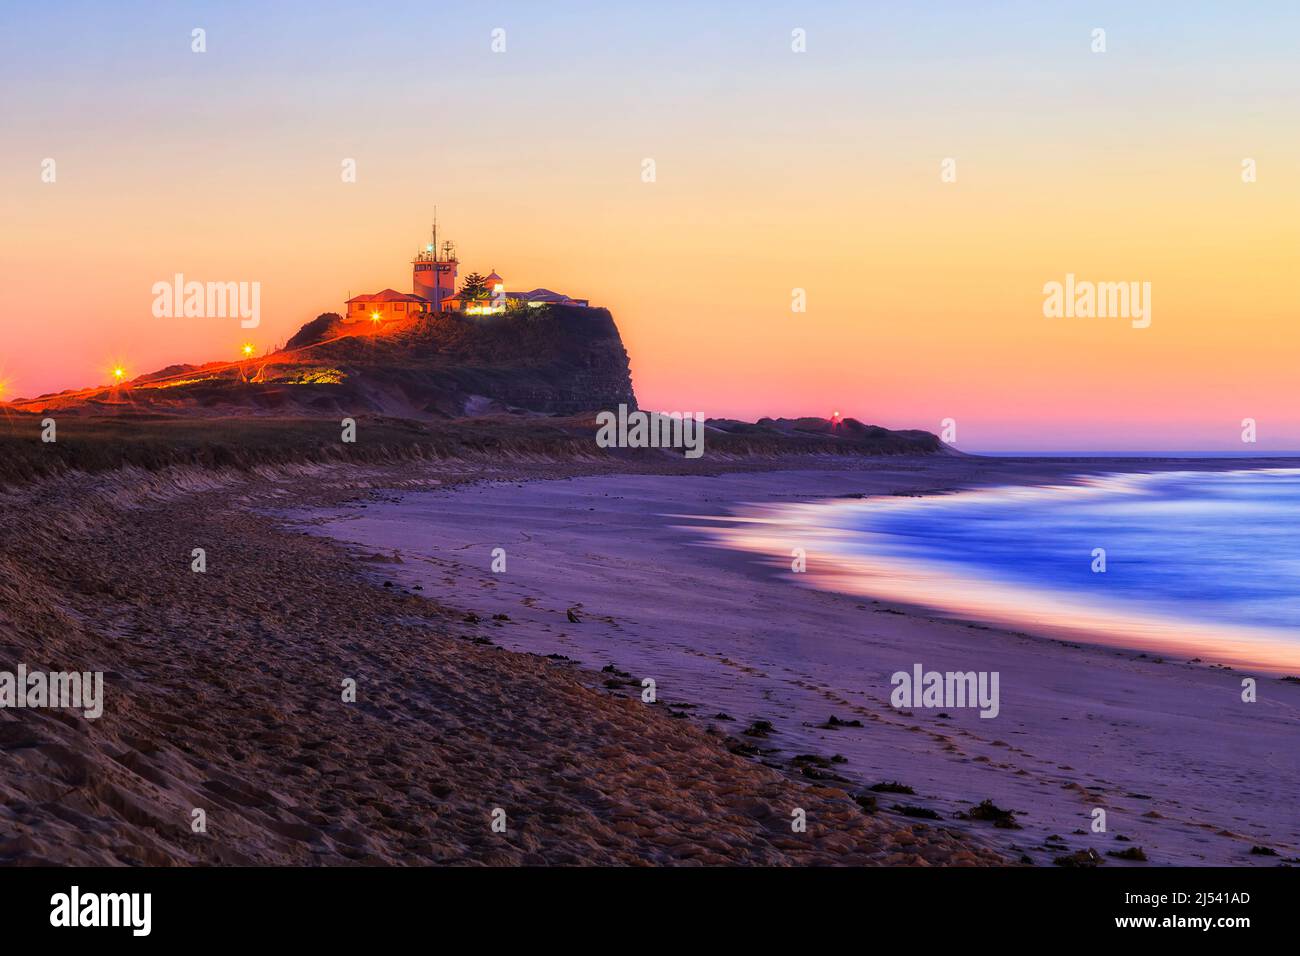 Malerischer Sonnenaufgang am Nobbys Head Beach in Newcastle, der Pazifikküste Australiens. Stockfoto